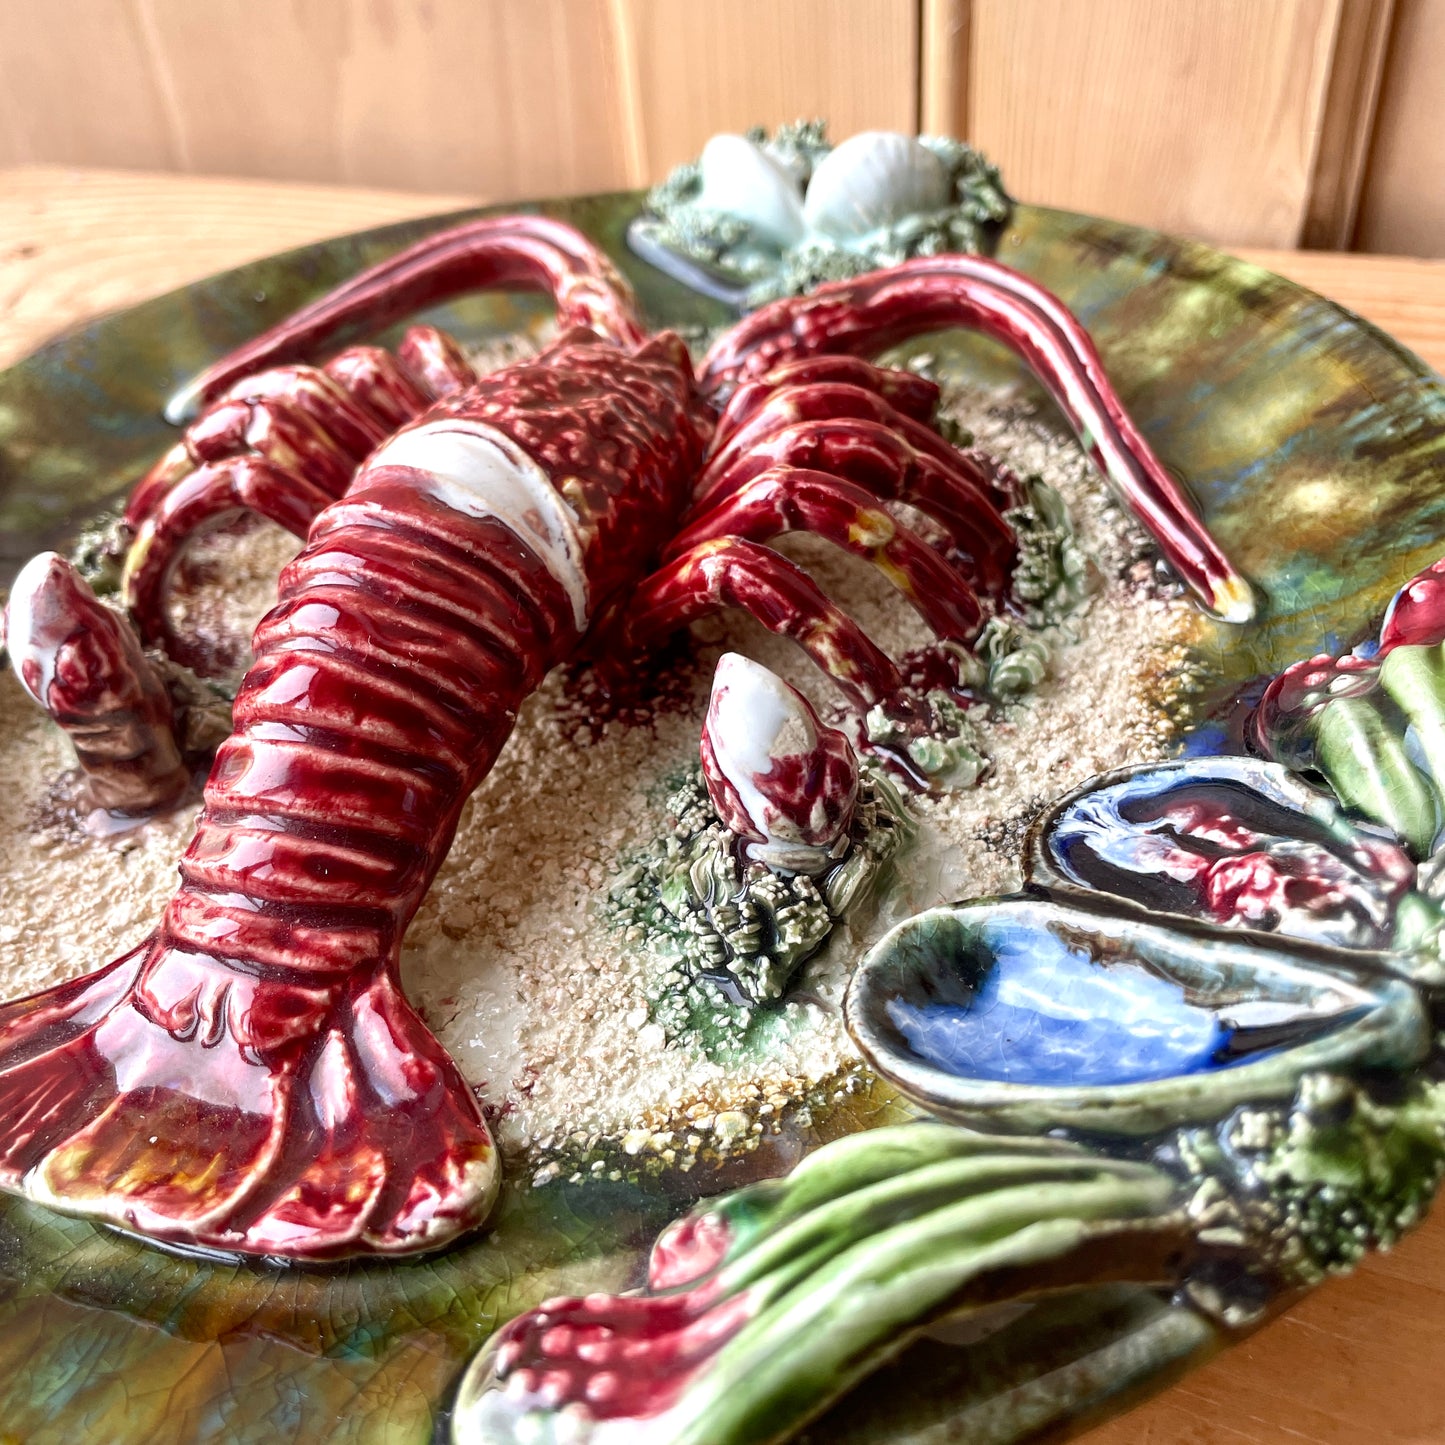 Vintage Majolica Caldas da Rainha Lobster plate